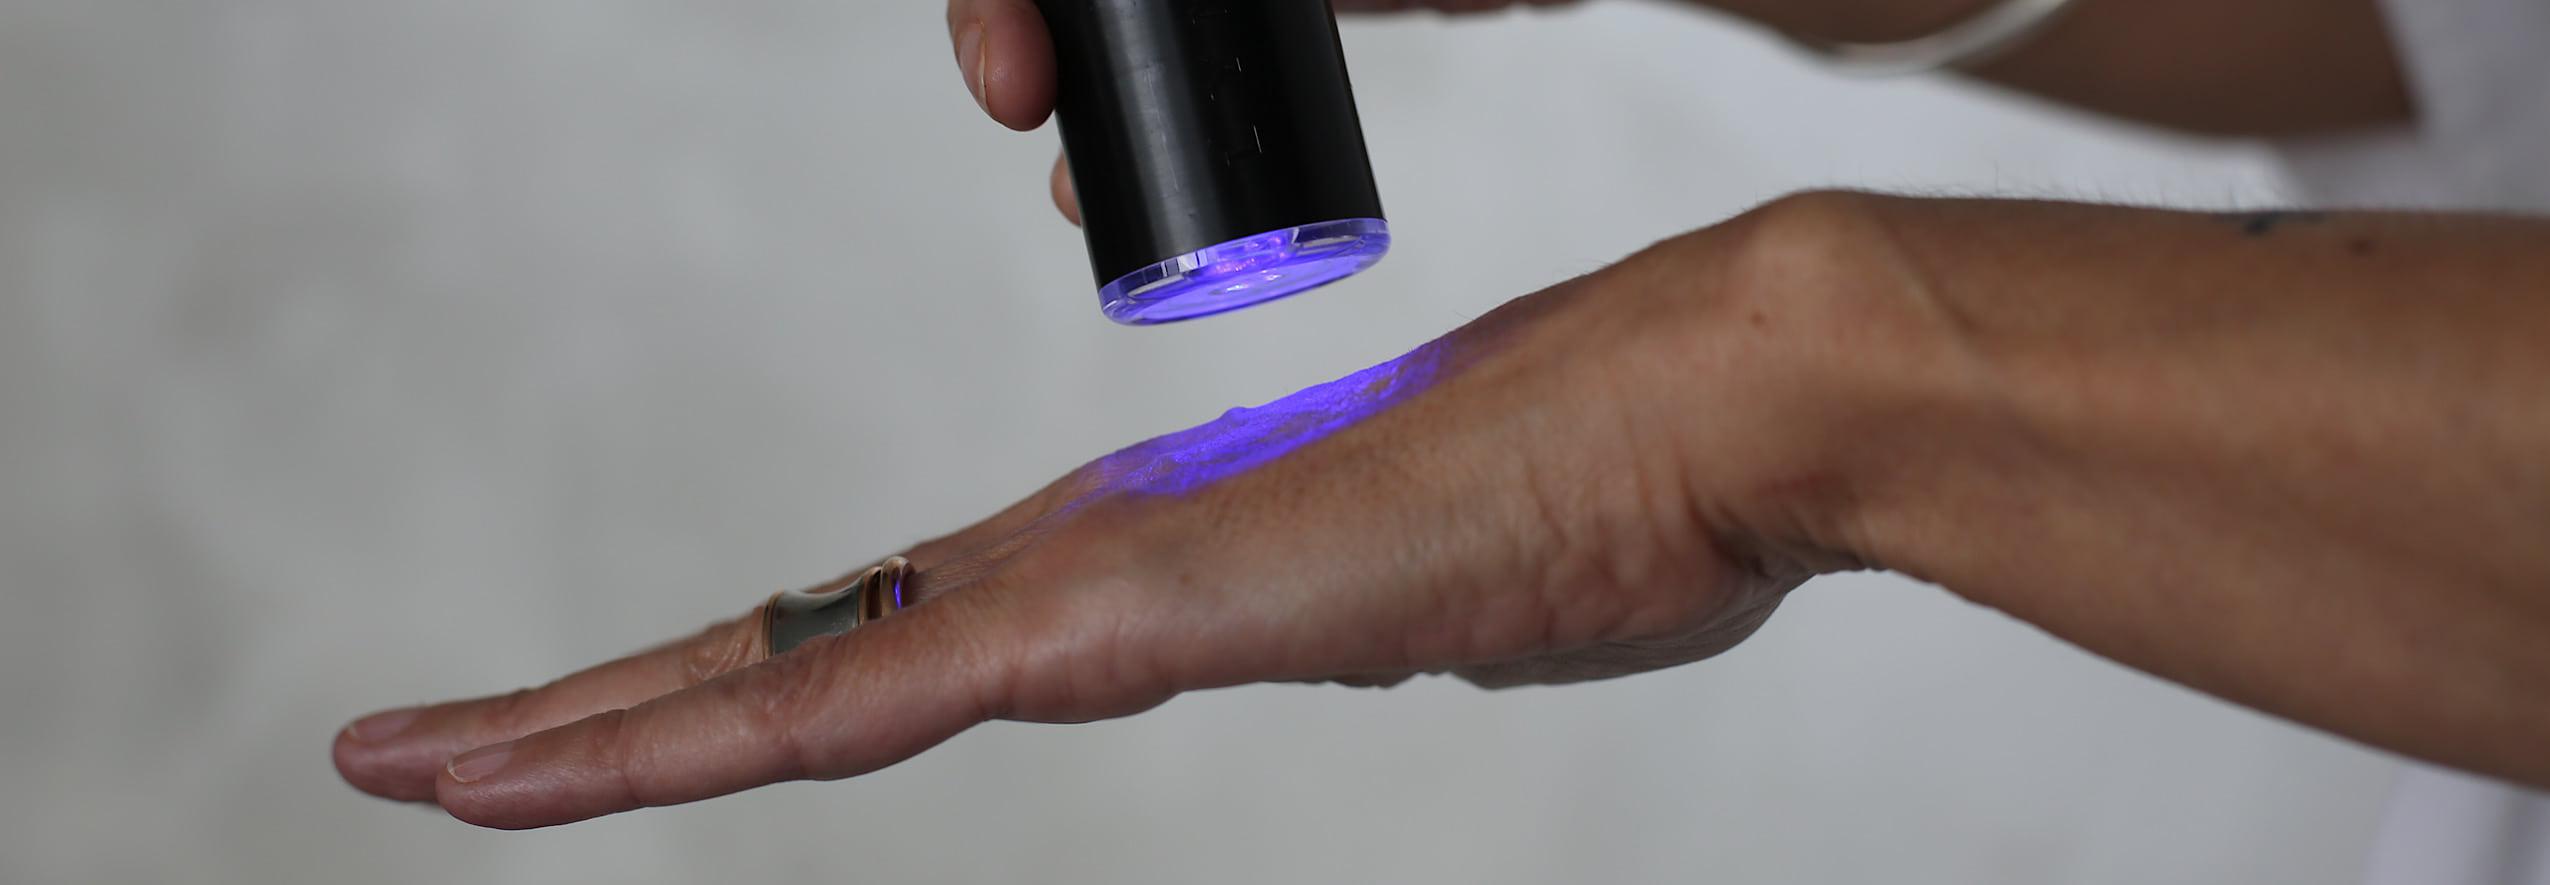 Hand skin laser skin tightening